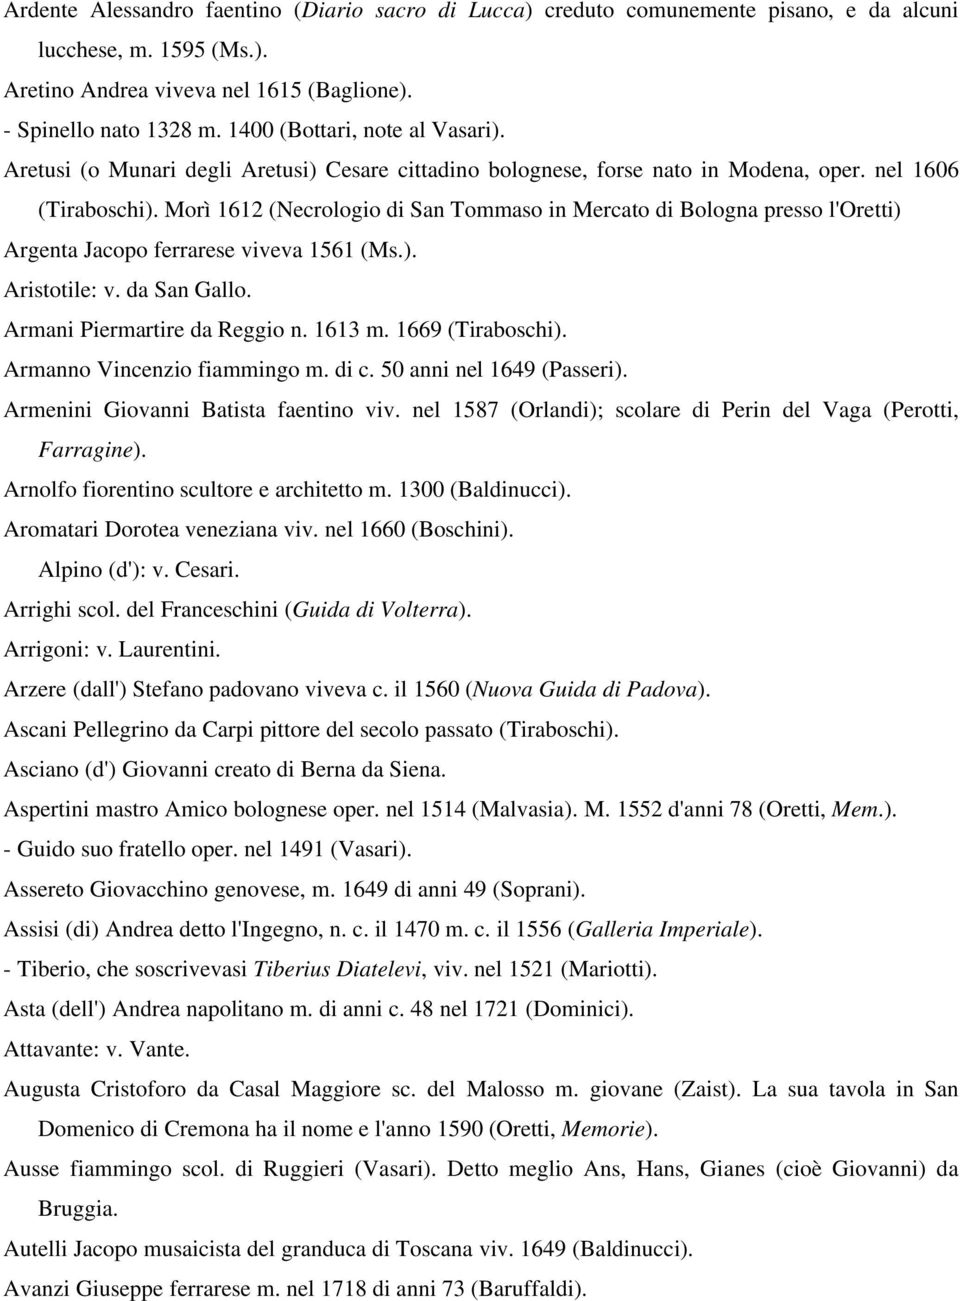 Morì 1612 (Necrologio di San Tommaso in Mercato di Bologna presso l'oretti) Argenta Jacopo ferrarese viveva 1561 (Ms.). Aristotile: v. da San Gallo. Armani Piermartire da Reggio n. 1613 m.